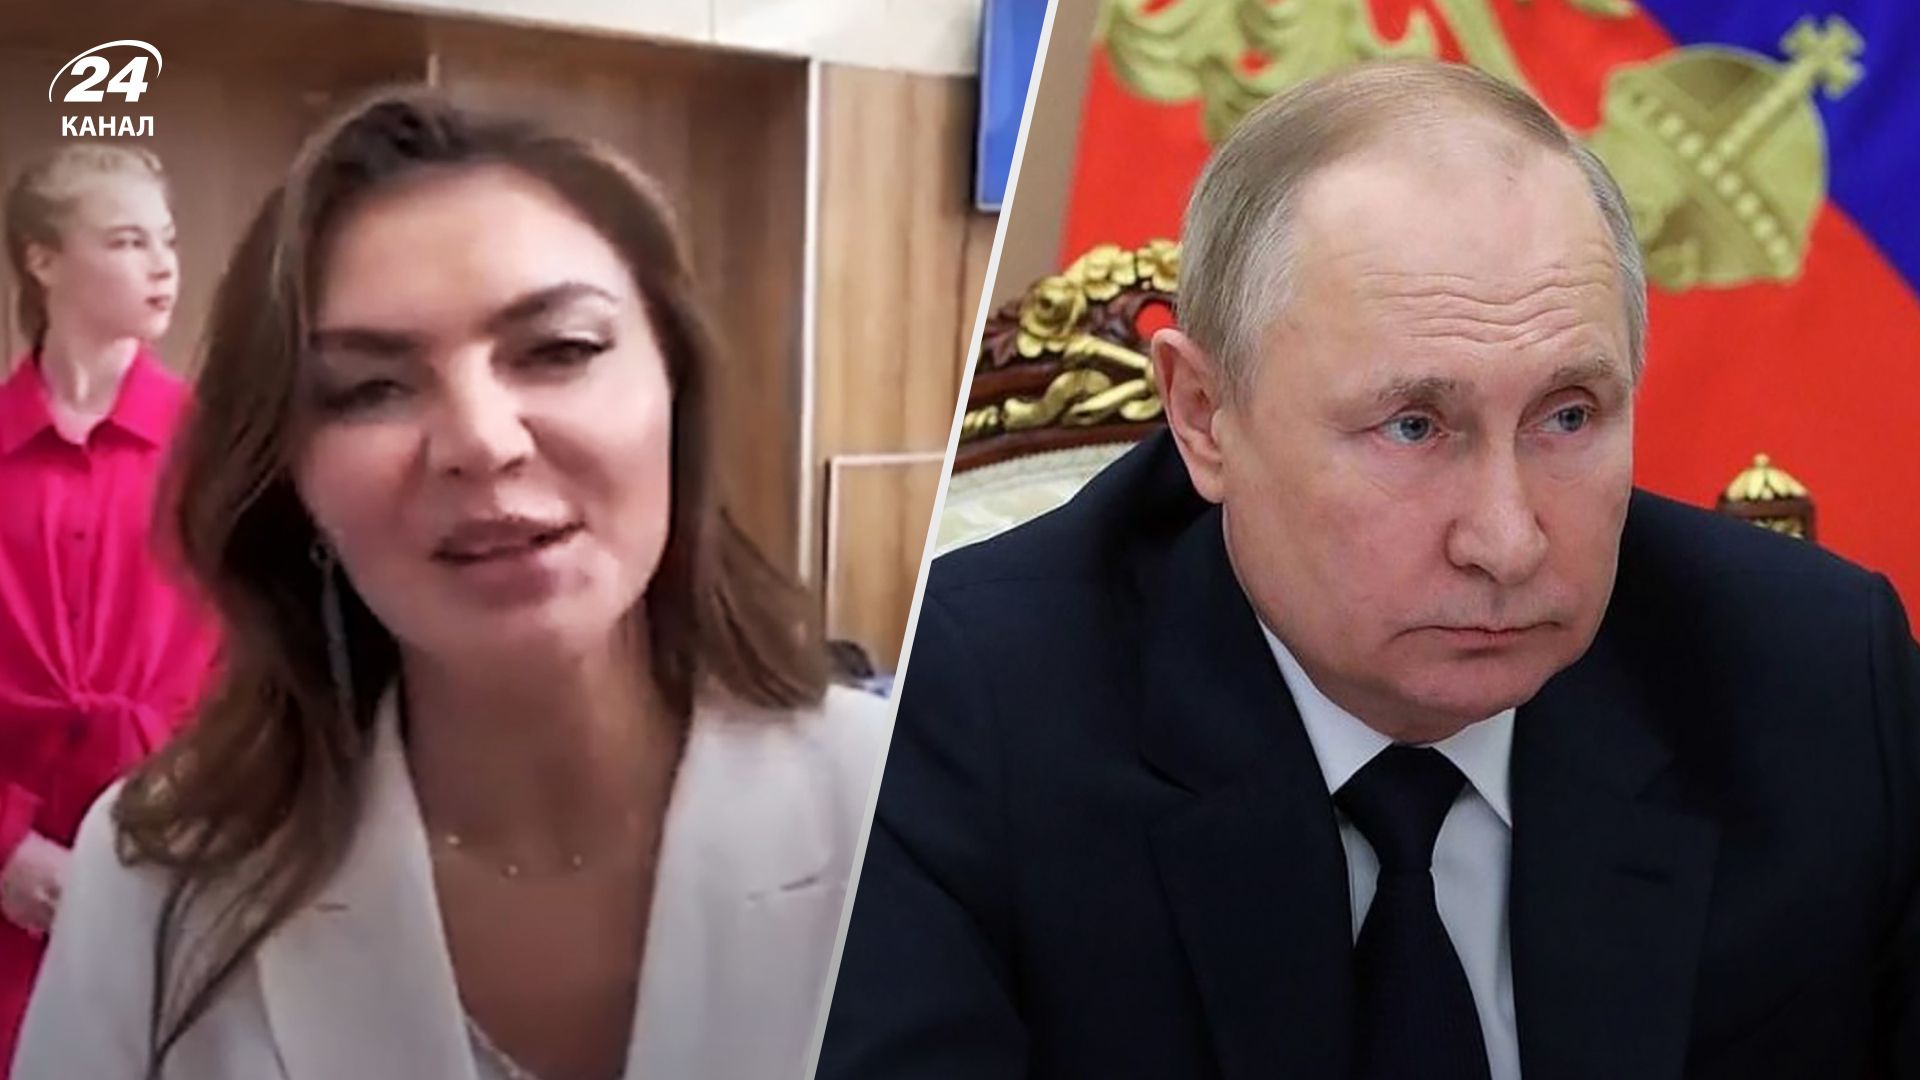 Аліна Кабаєва шокувала виглядом - фото коханки Володимира Путіна